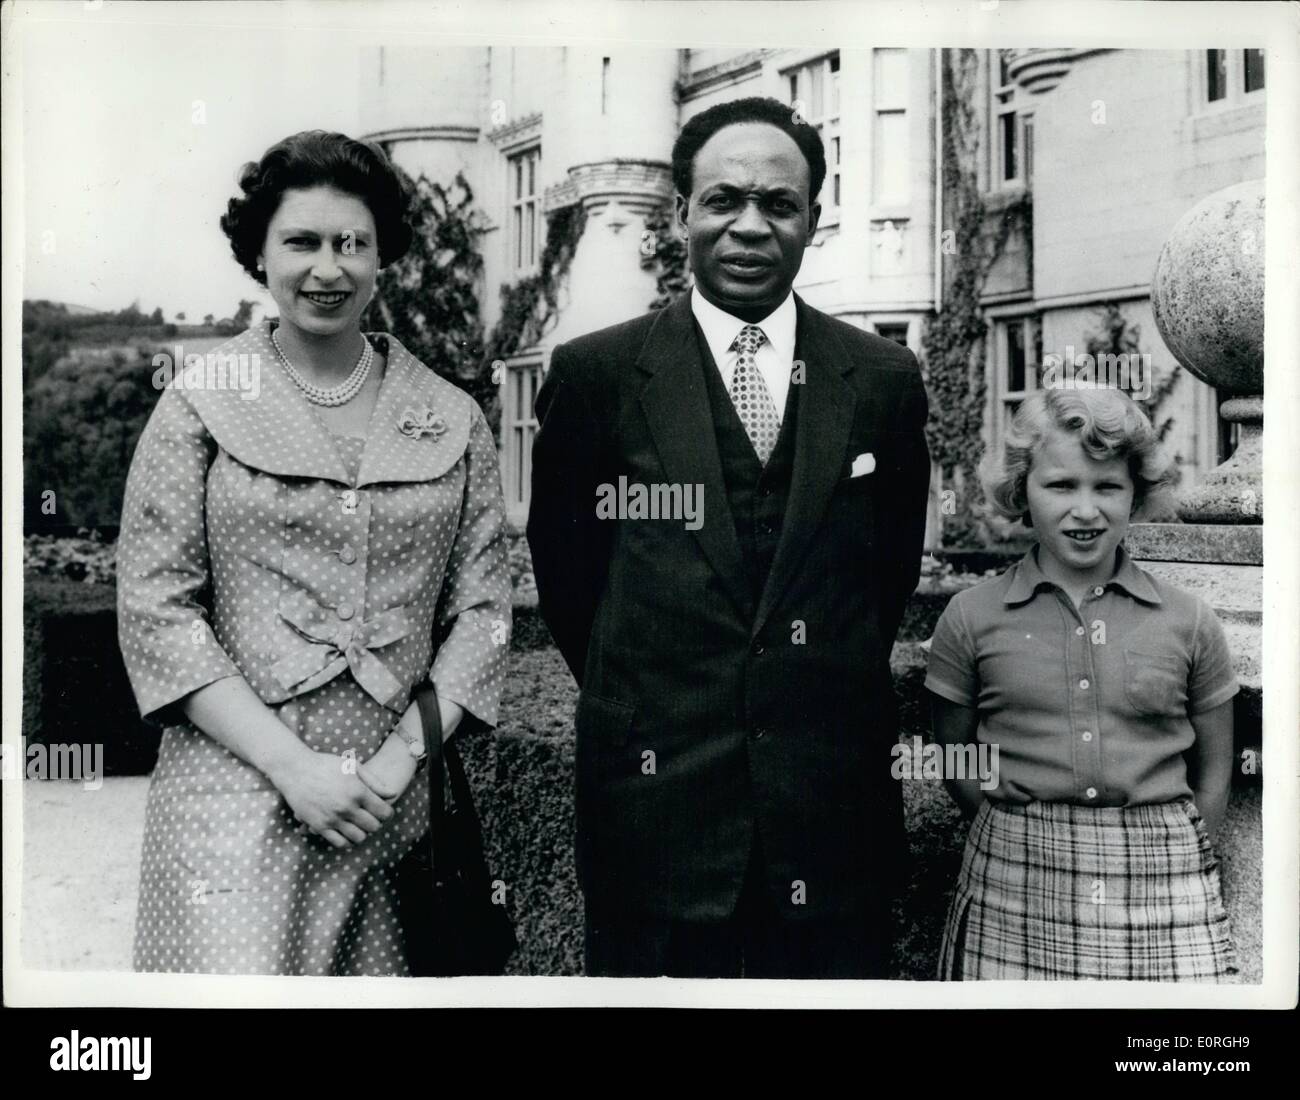 8. August 1959 - Kanäle Premierminister sieht die Königin am Baimororal Schloss: Dr. Nkrumah, der Premierminister von Ghana, hat die Königin am Belmoral Schloss besuchte. HR-Majestät war wegen besuchen Sie Ghana im November, aber der Besuch wegen der Königin Schwangerschaft abgesagt werden musste. Sie sollen neu Diskus Datum für eine königliche Besuch Gavan. Foto zeigt Dr. Nerumar heute mit der Königin und Prinzessin Anne in Gourdes von Balmoral Castle abgebildet ist. Stockfoto